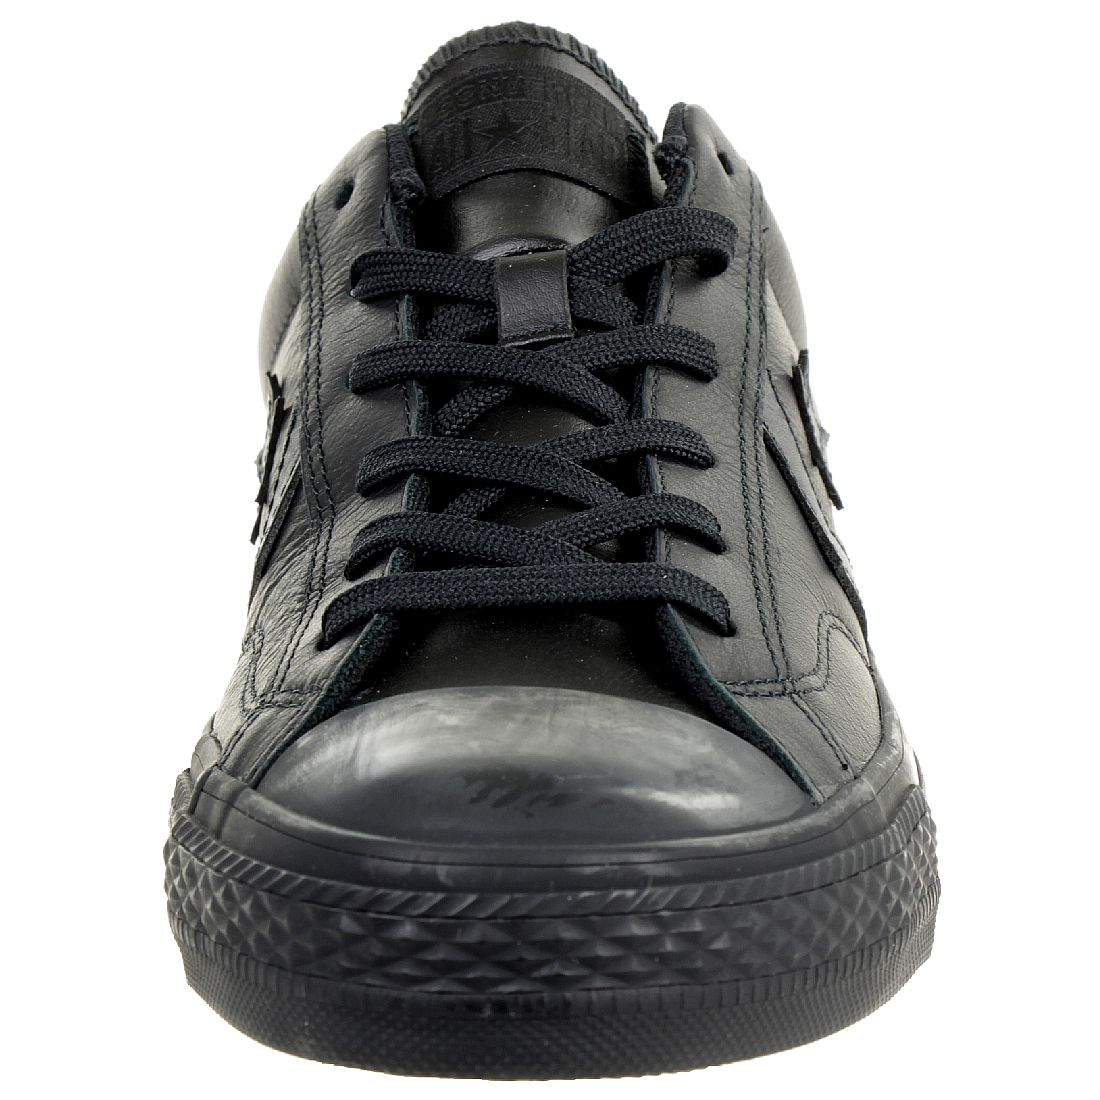 Converse STAR PLAYER OX Schuhe Sneaker Leder schwarz 159779C 